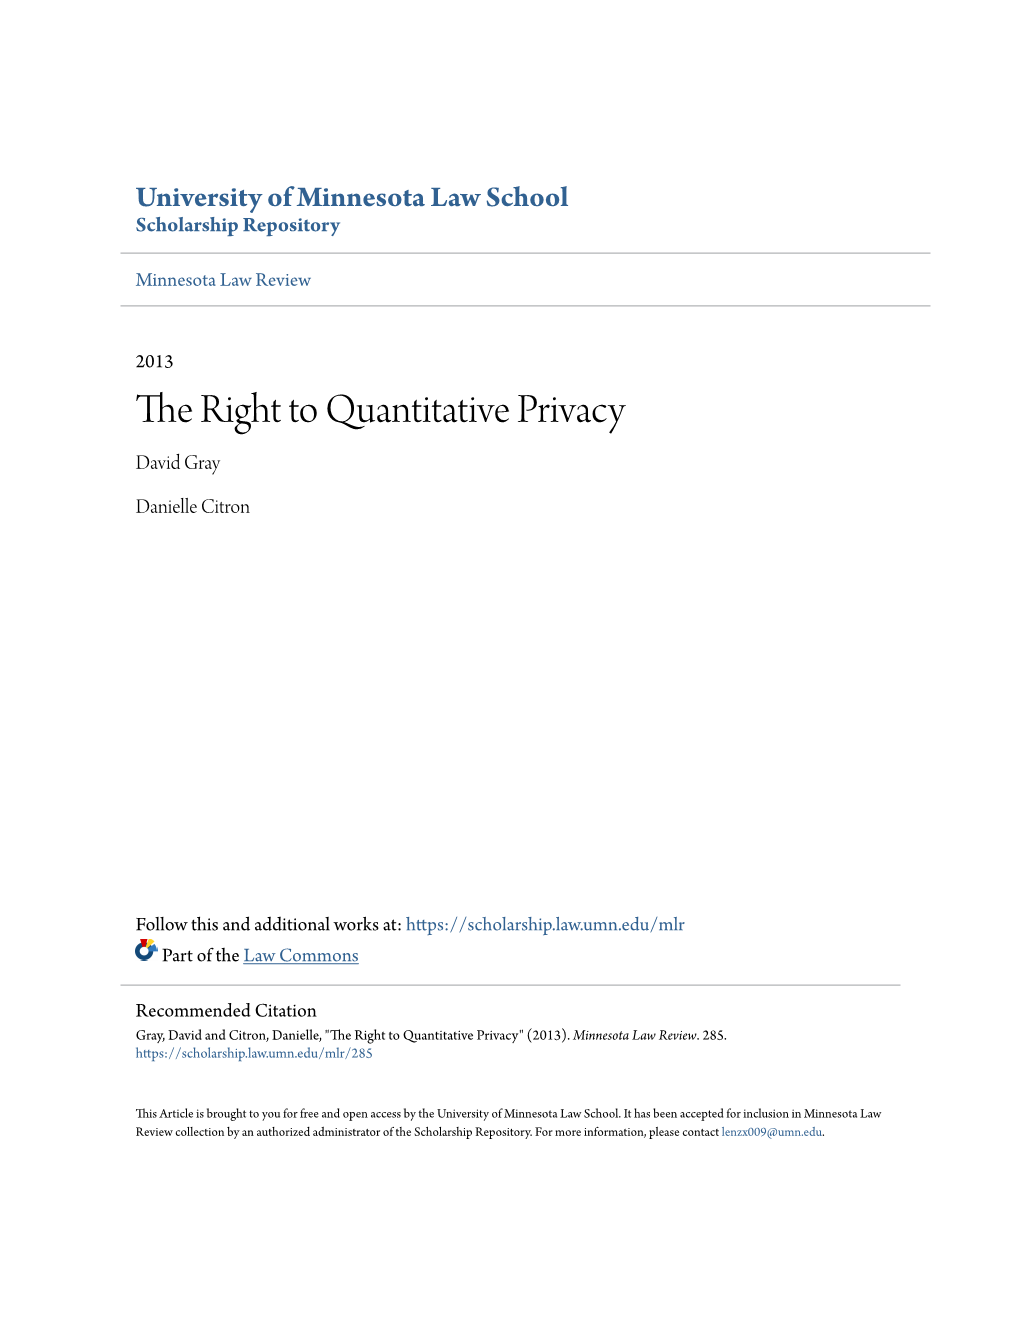 The Right to Quantitative Privacy David Gray